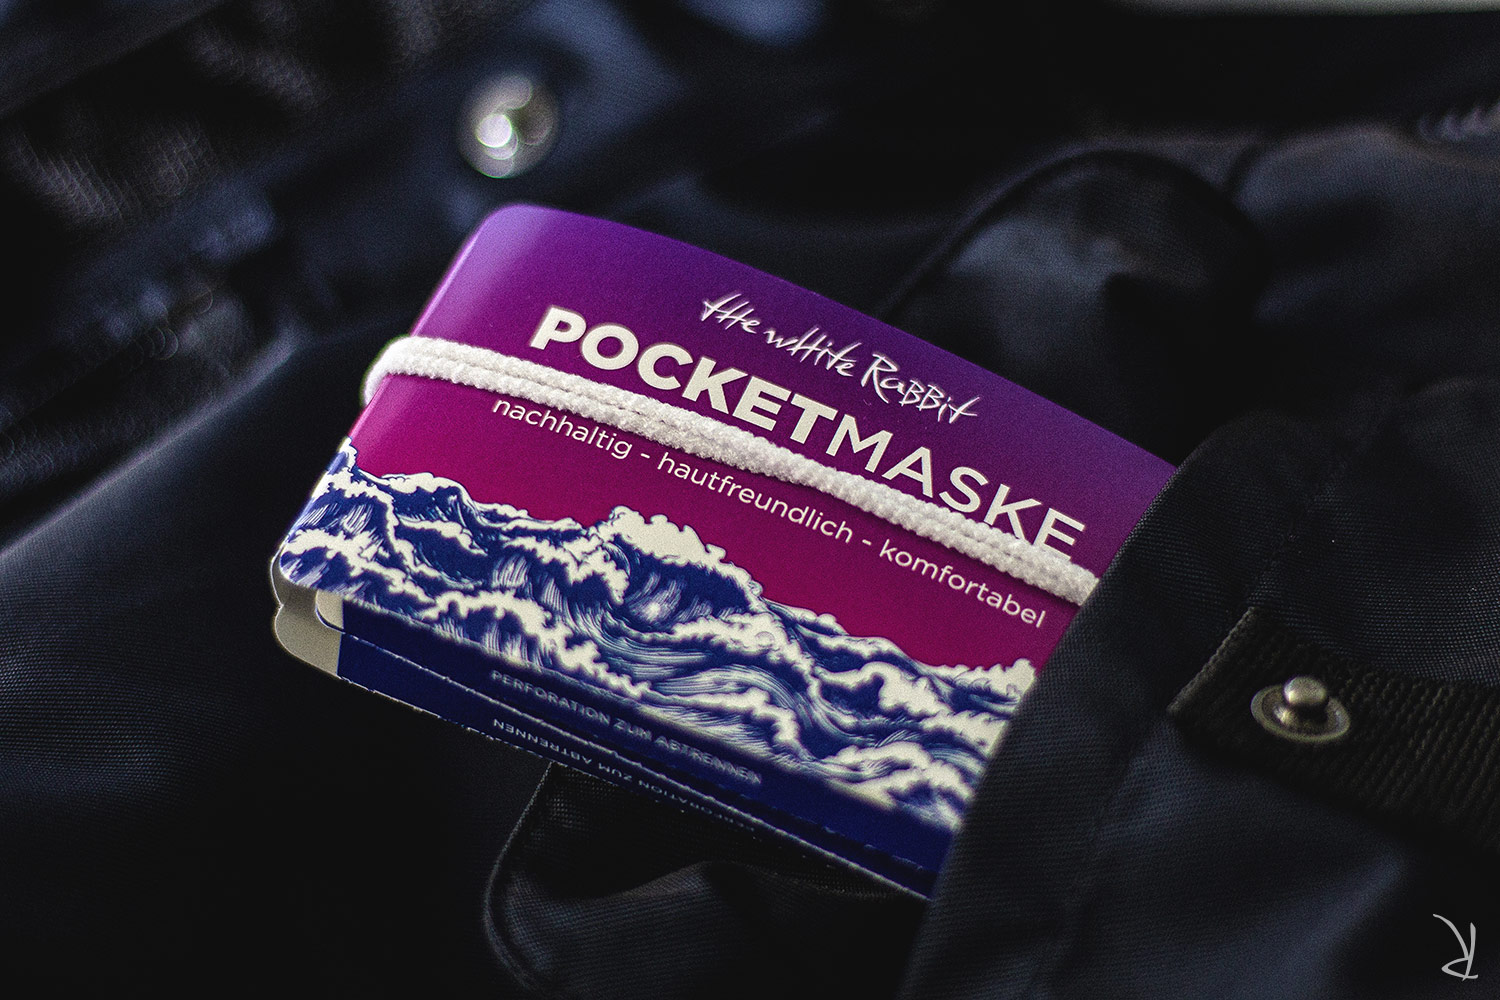 Pocketmaske - Pocketmasken - TWR - Fotoshooting 2020 - Produktfotografie - The White Rabbit - Bild 2